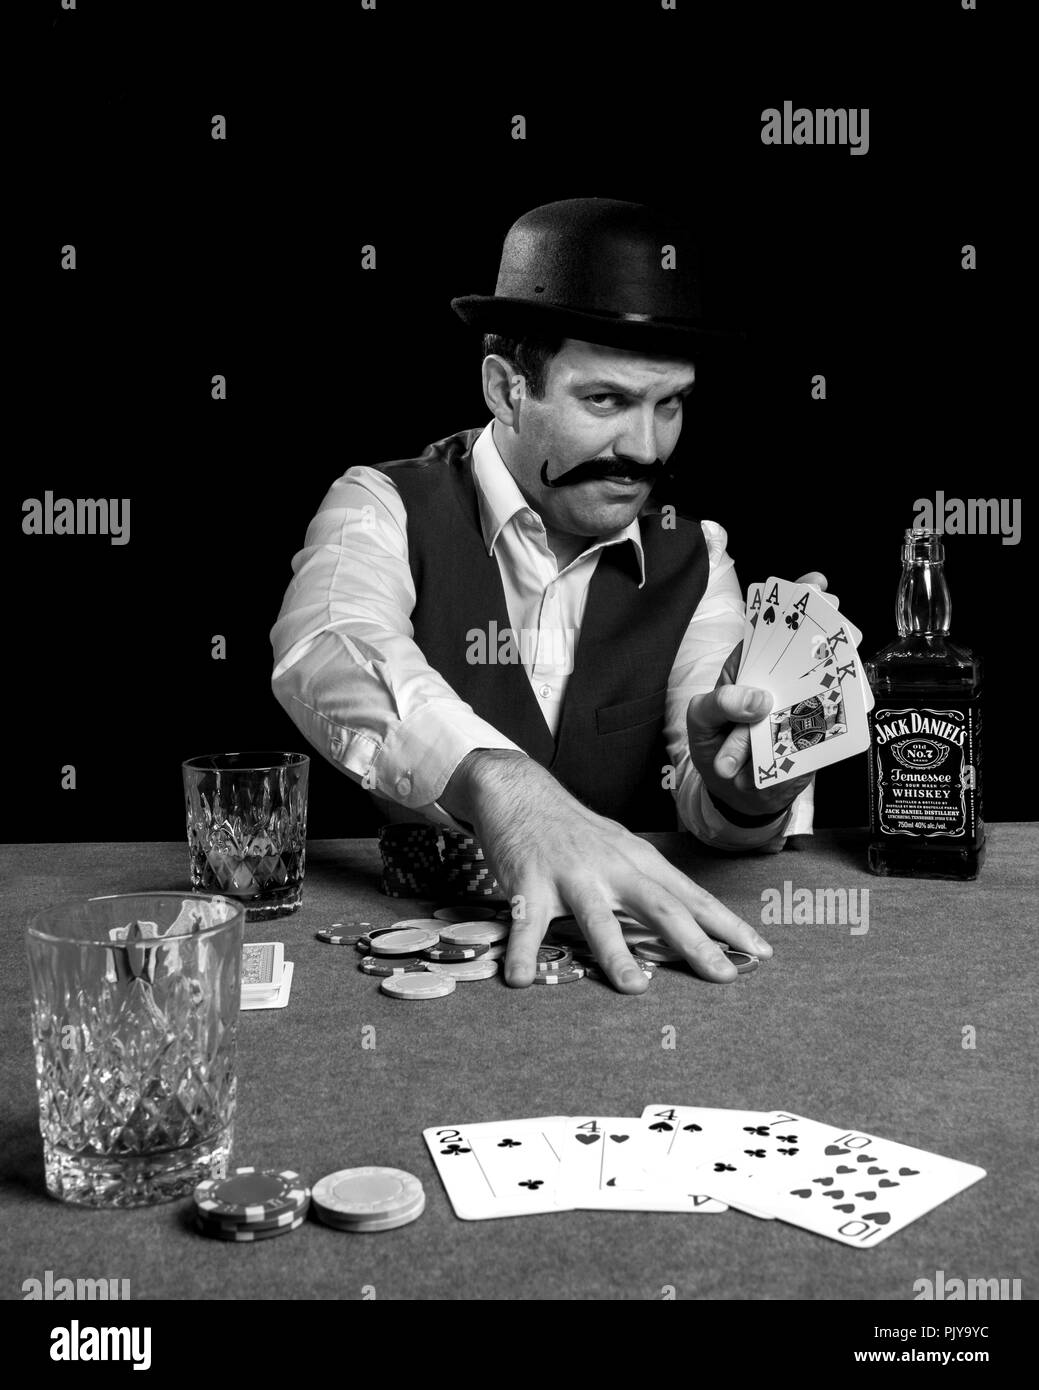 Photographie d'un homme jouant et gagnant d'une partie de poker de boire une bouteille de whisky Jack Daniel's fake vintage vieux chapeau melon, l'alcool Banque D'Images